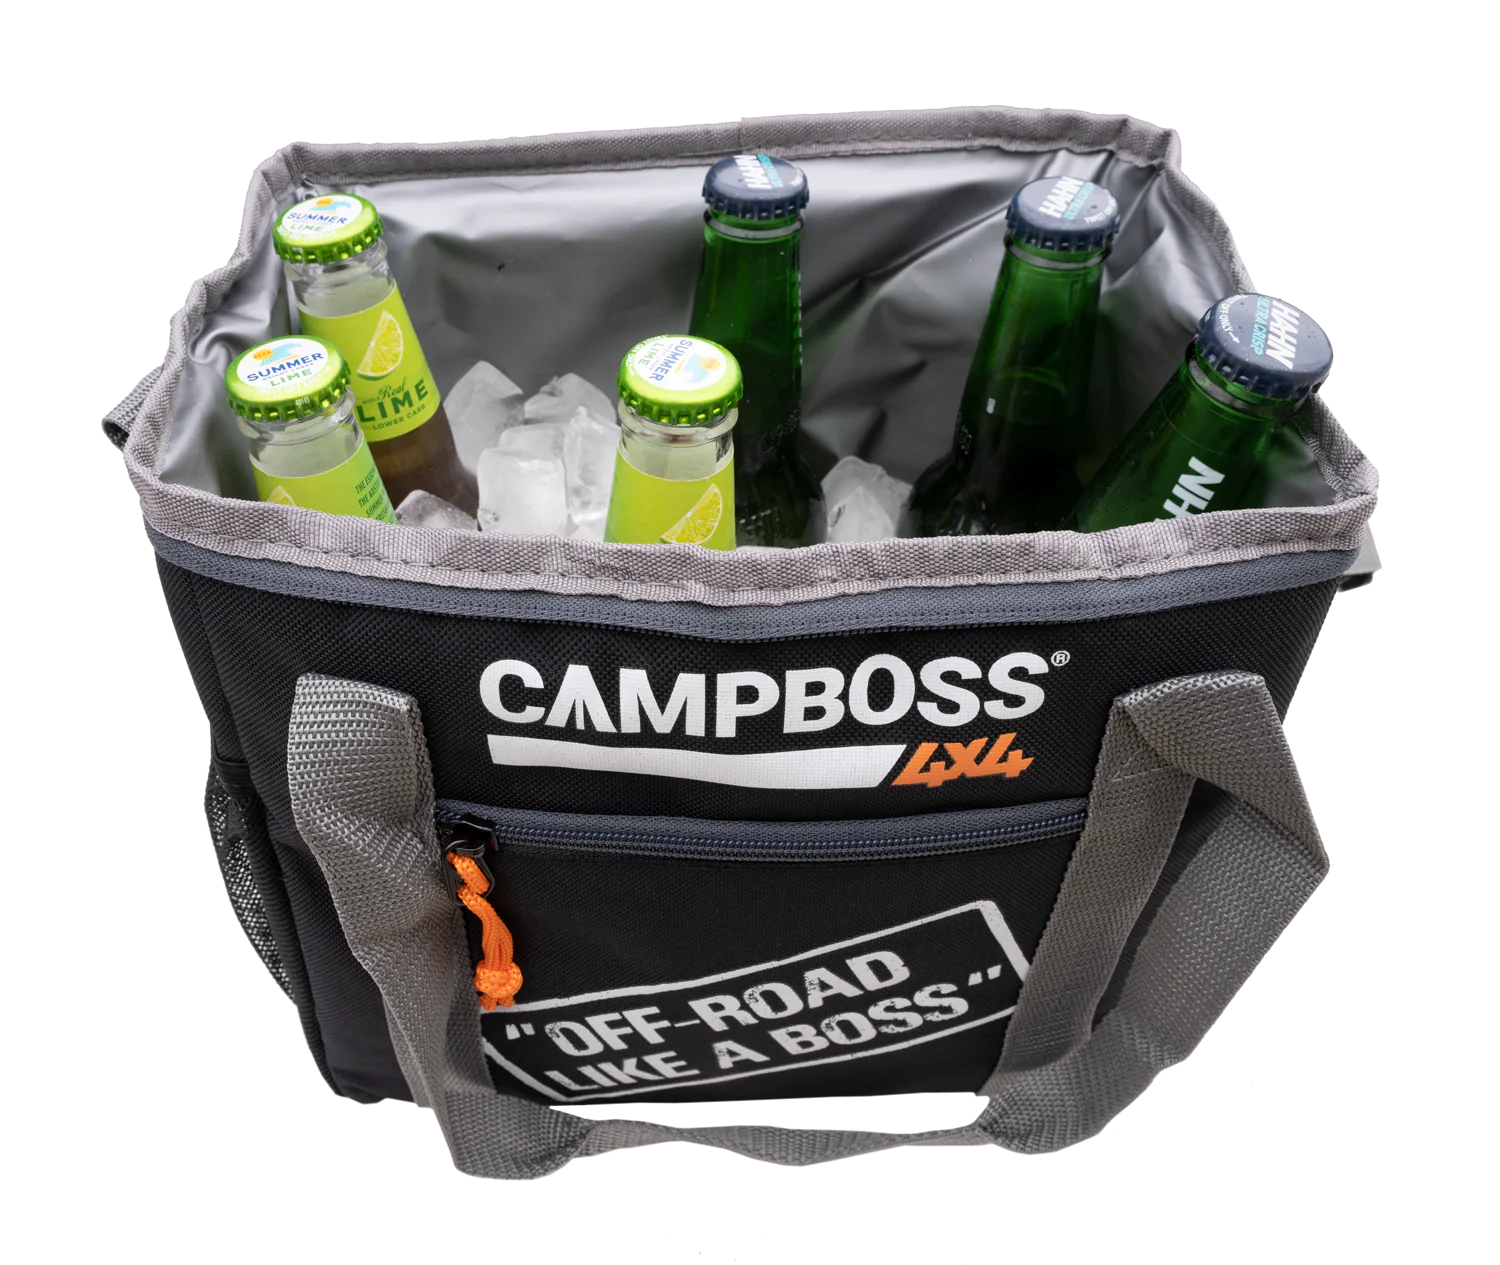 Campboss-Cooler Bag 2021